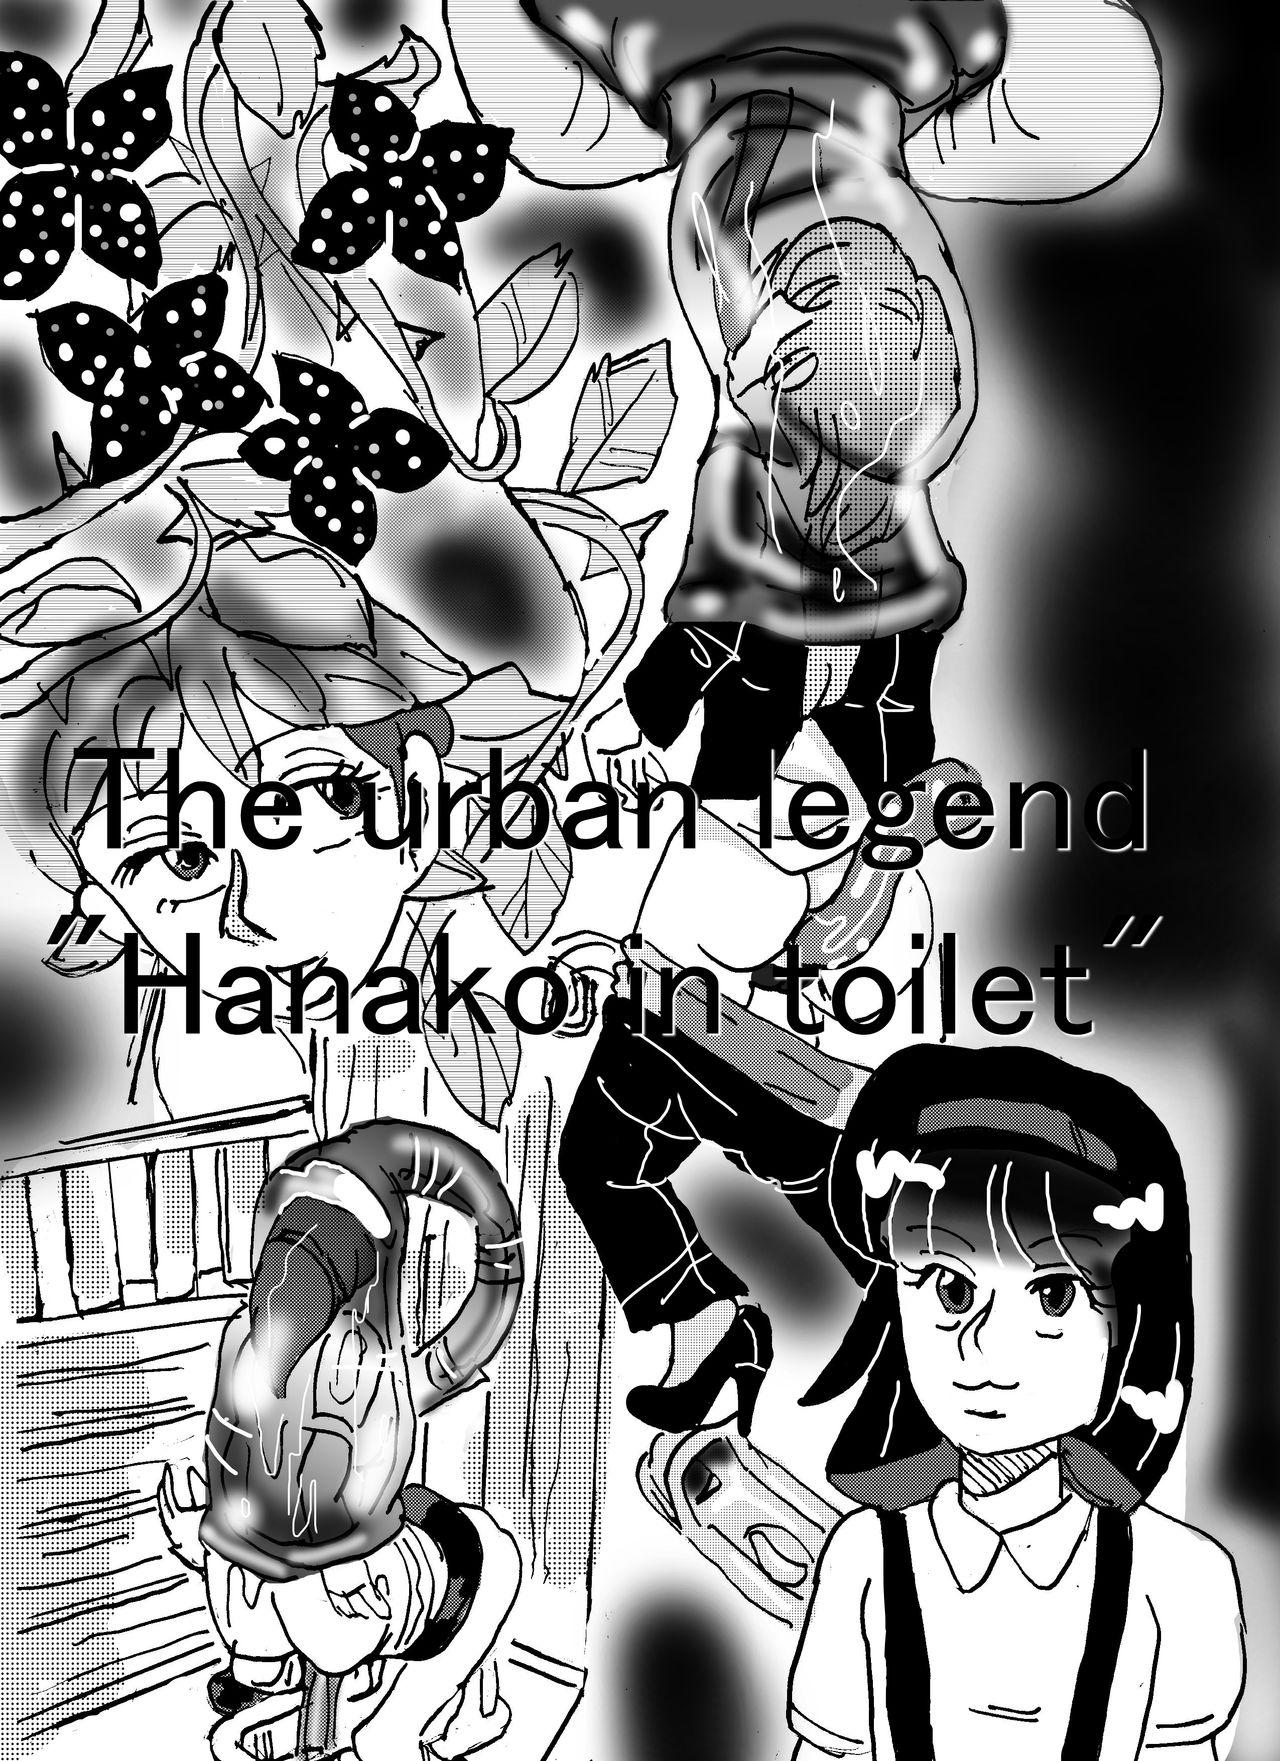 White Urban legend "Ha*ako in toilet" - Original Butt Plug - Picture 1